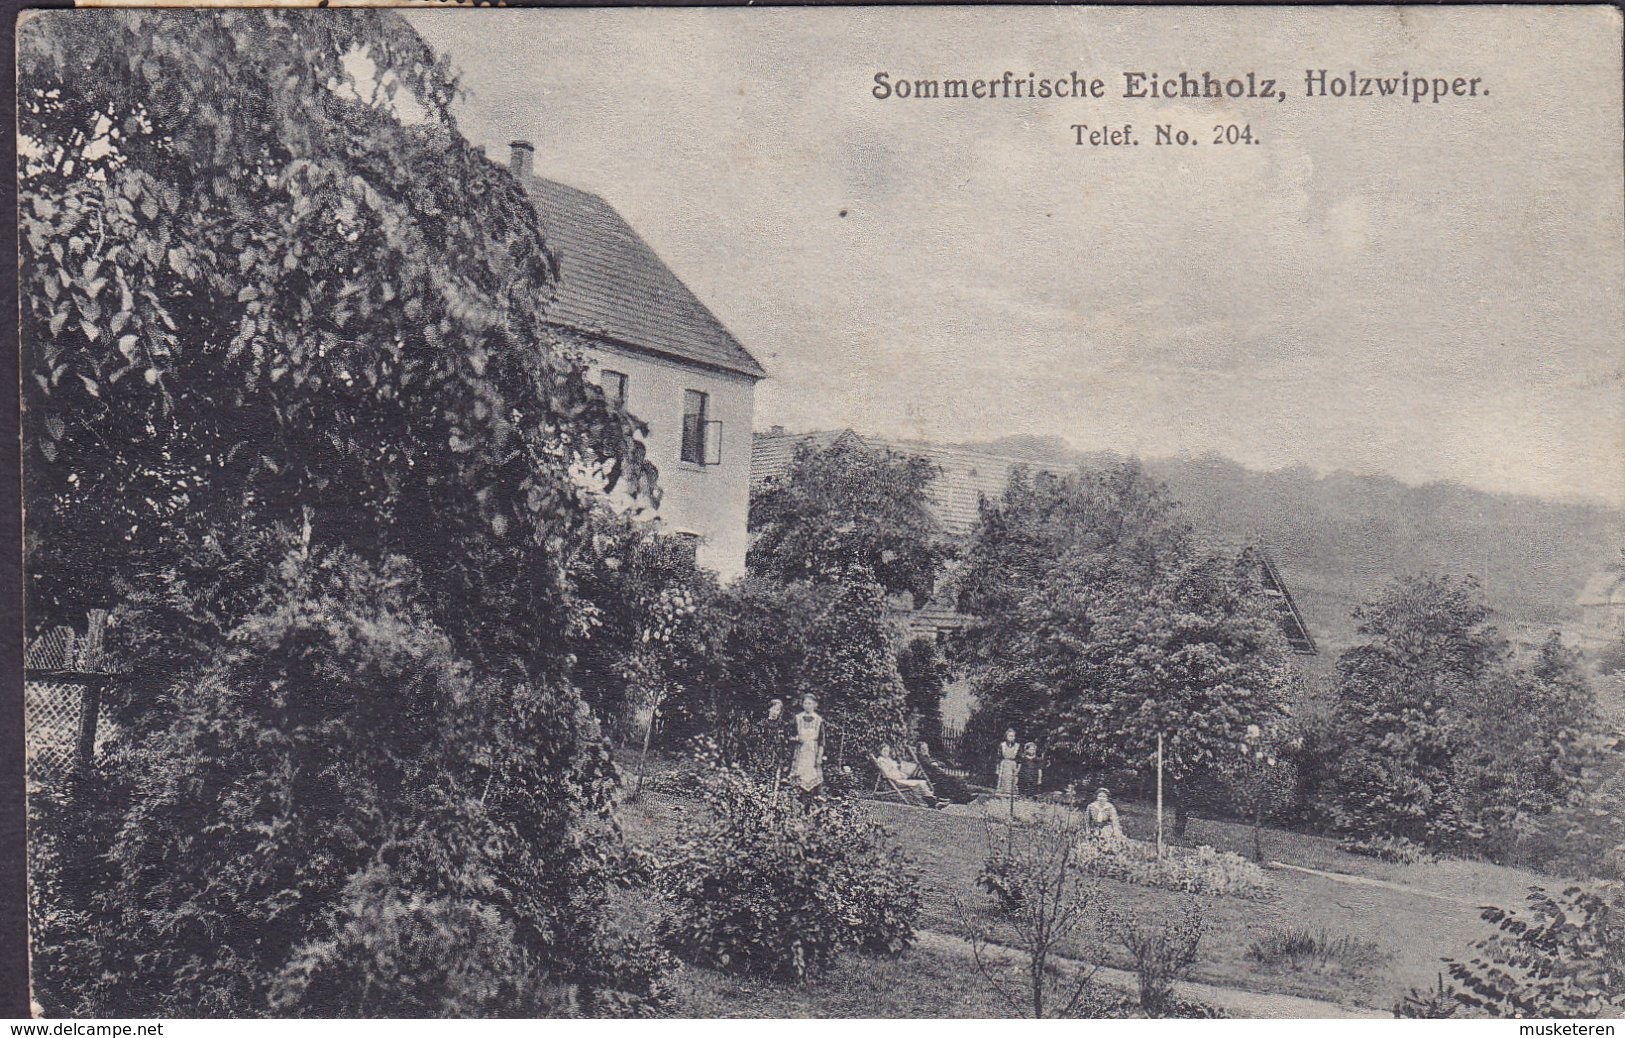 Deutsches Reich PPC Sommerfrische Eichholz, Holzwipper Telef. No. 204 Bahnpost Cds. 1918 (2 Scans) - Marienheide